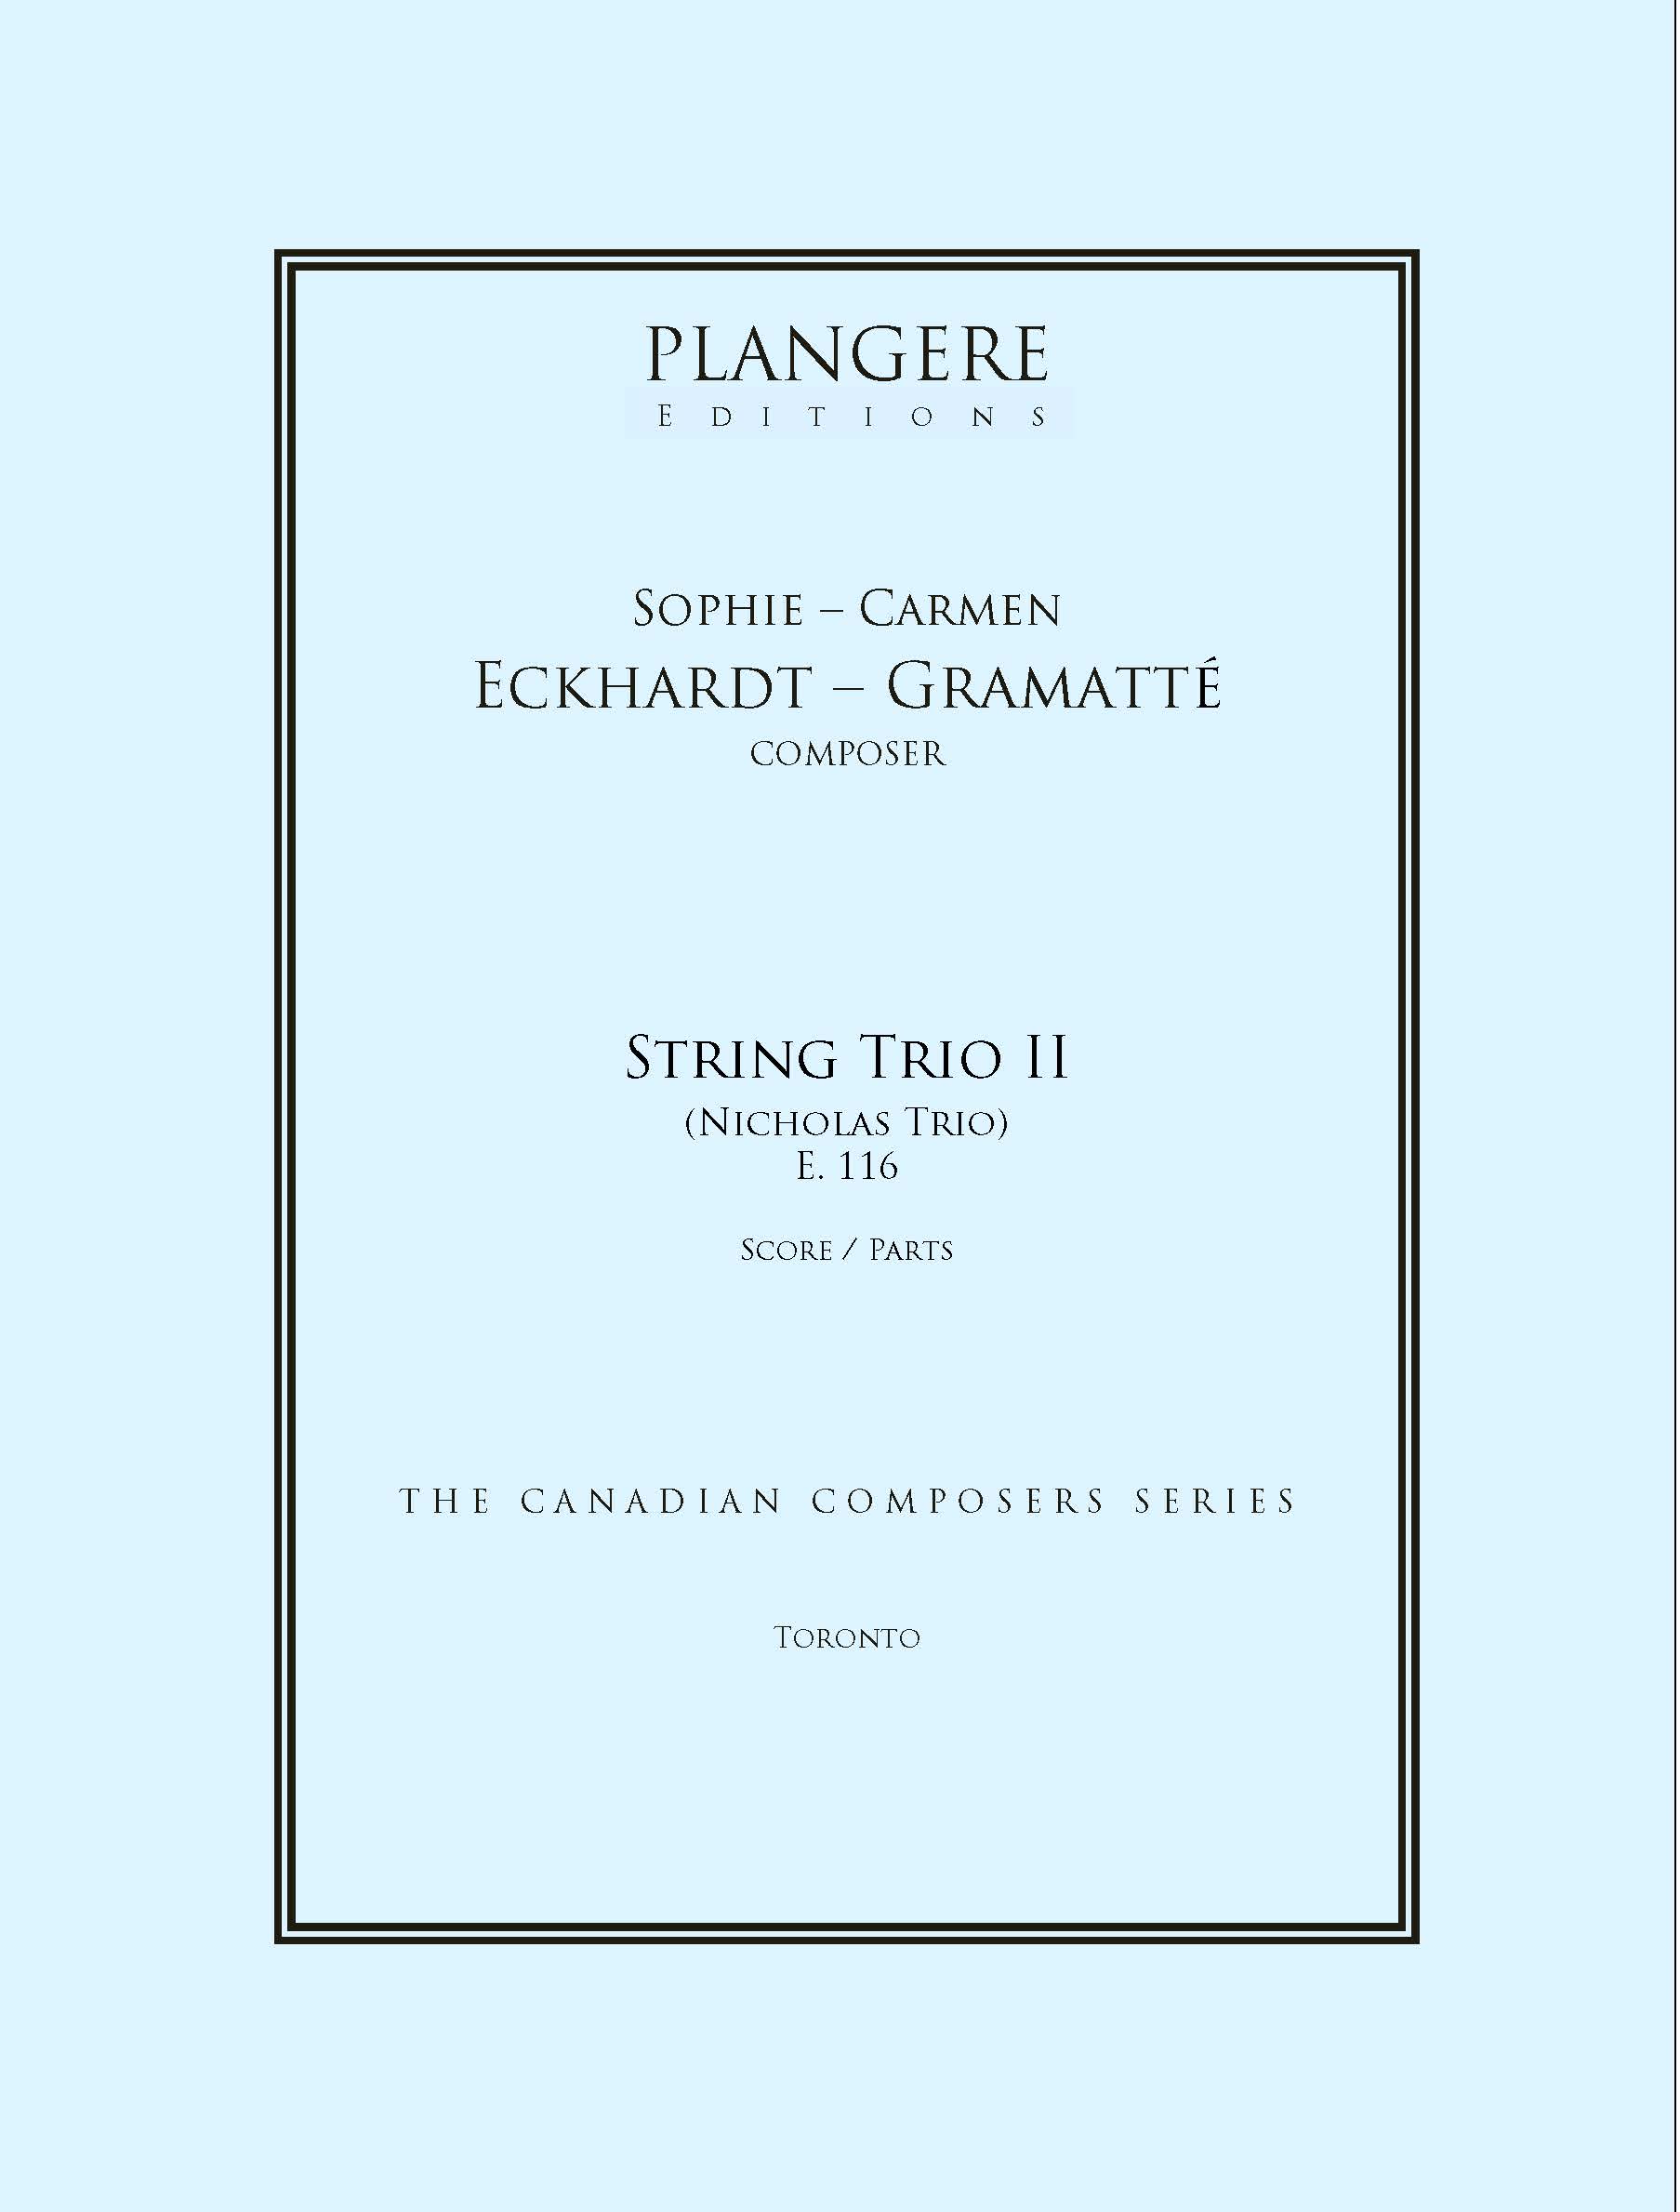 String Trio II   (Nicholas Trio)  E. 116